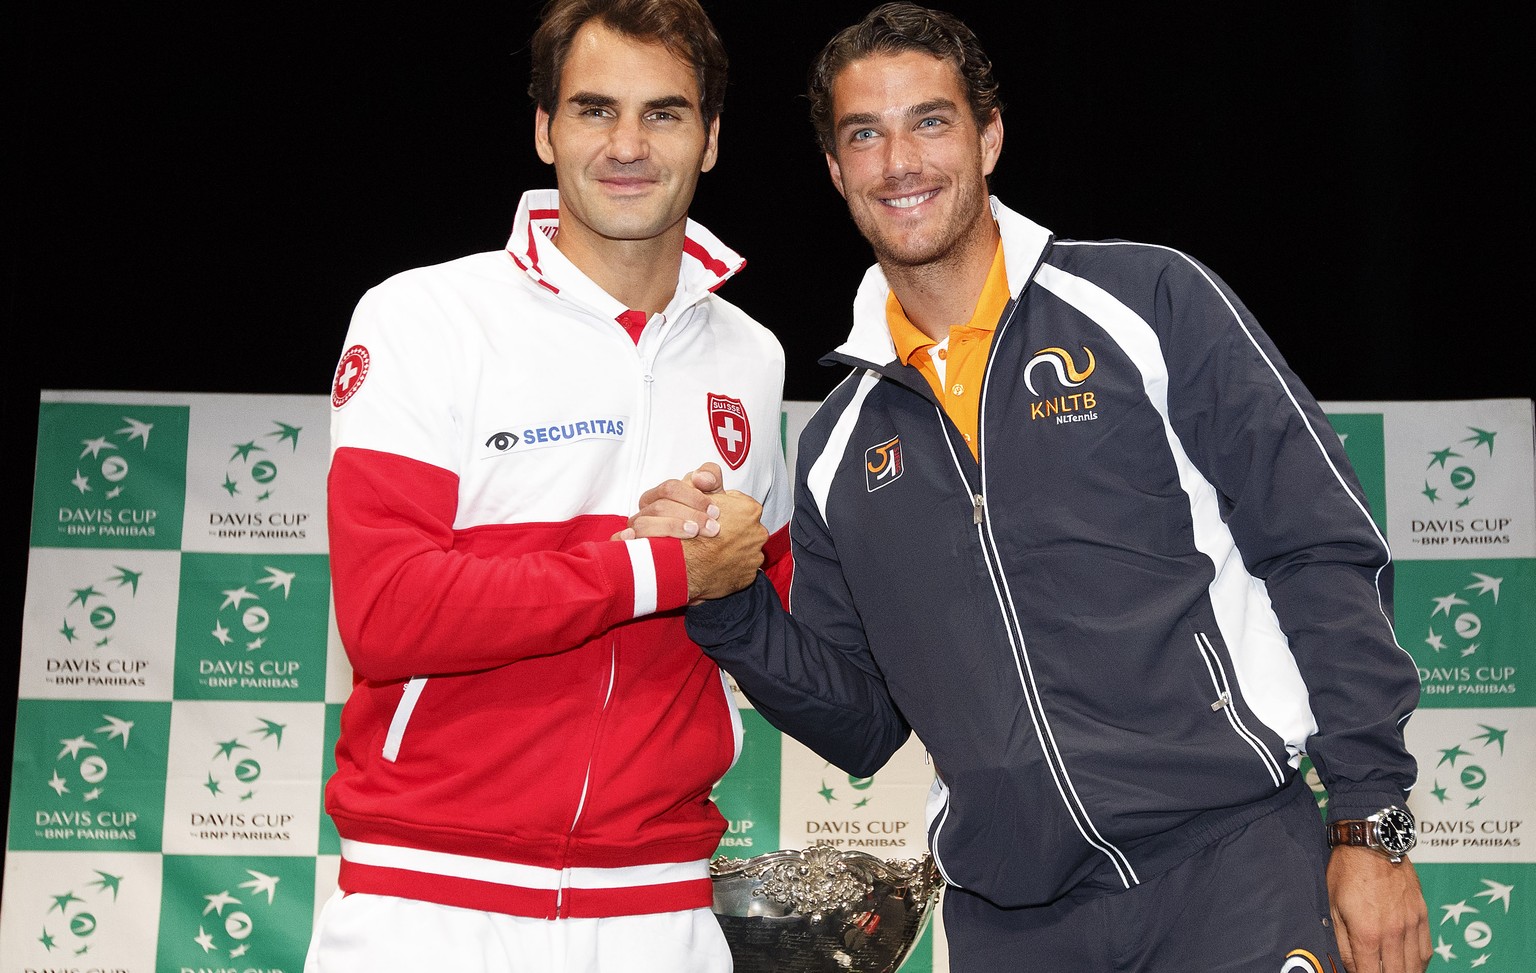 Hast du wahrscheinlich nicht gewusst: Roger Federer spielt heute gegen&nbsp;Jesse Huta Galung!&nbsp;